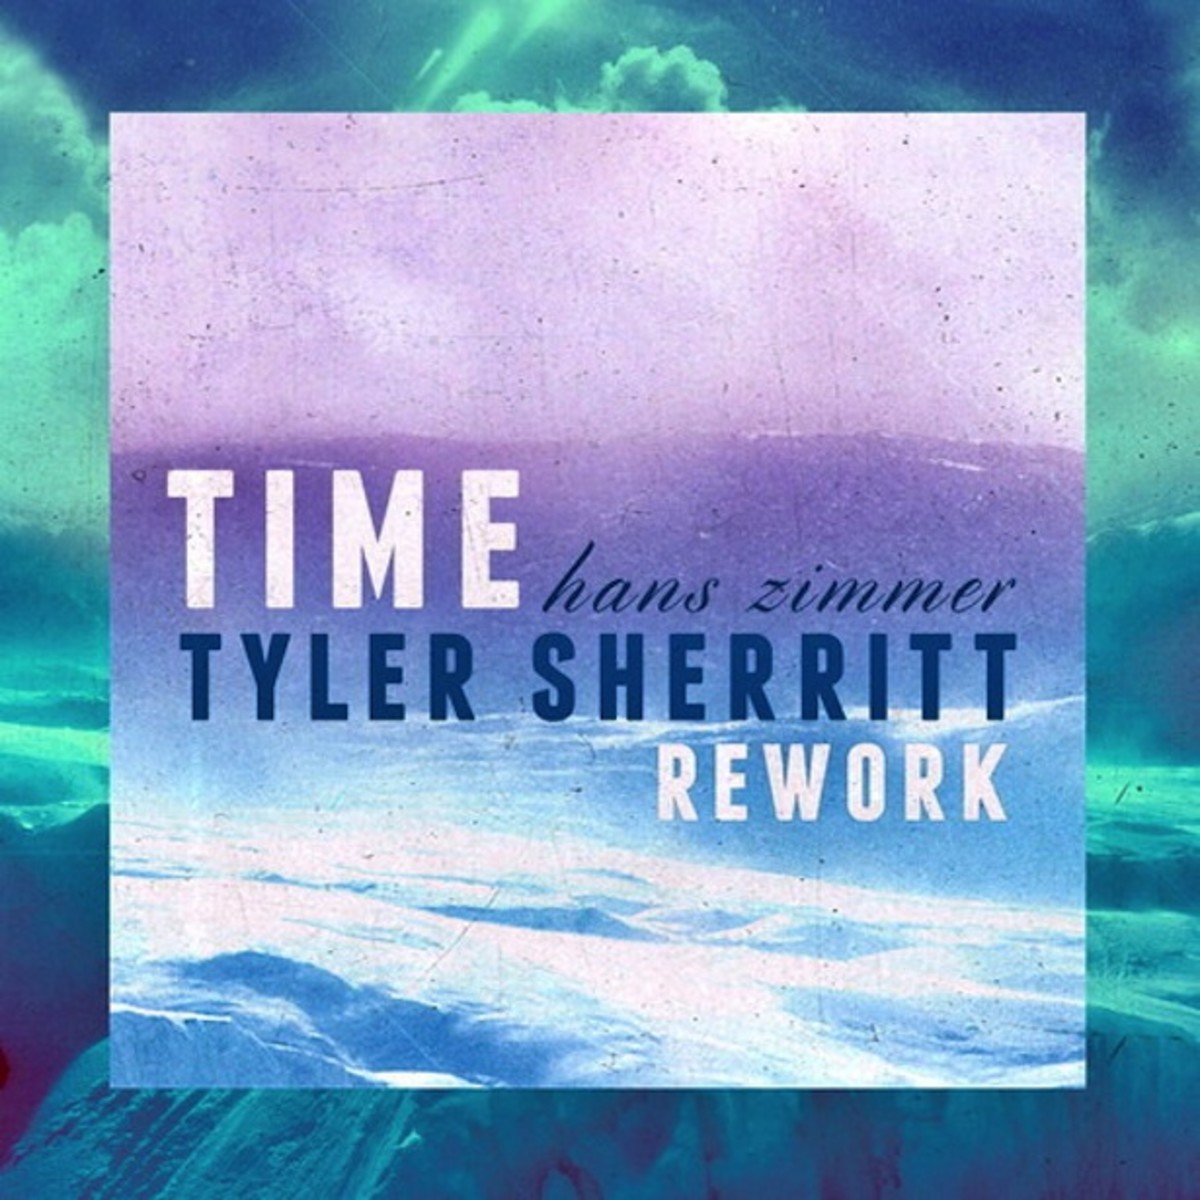 Free Download: Hans Zimmer 'Time' (Tyler Sherritt Rework)